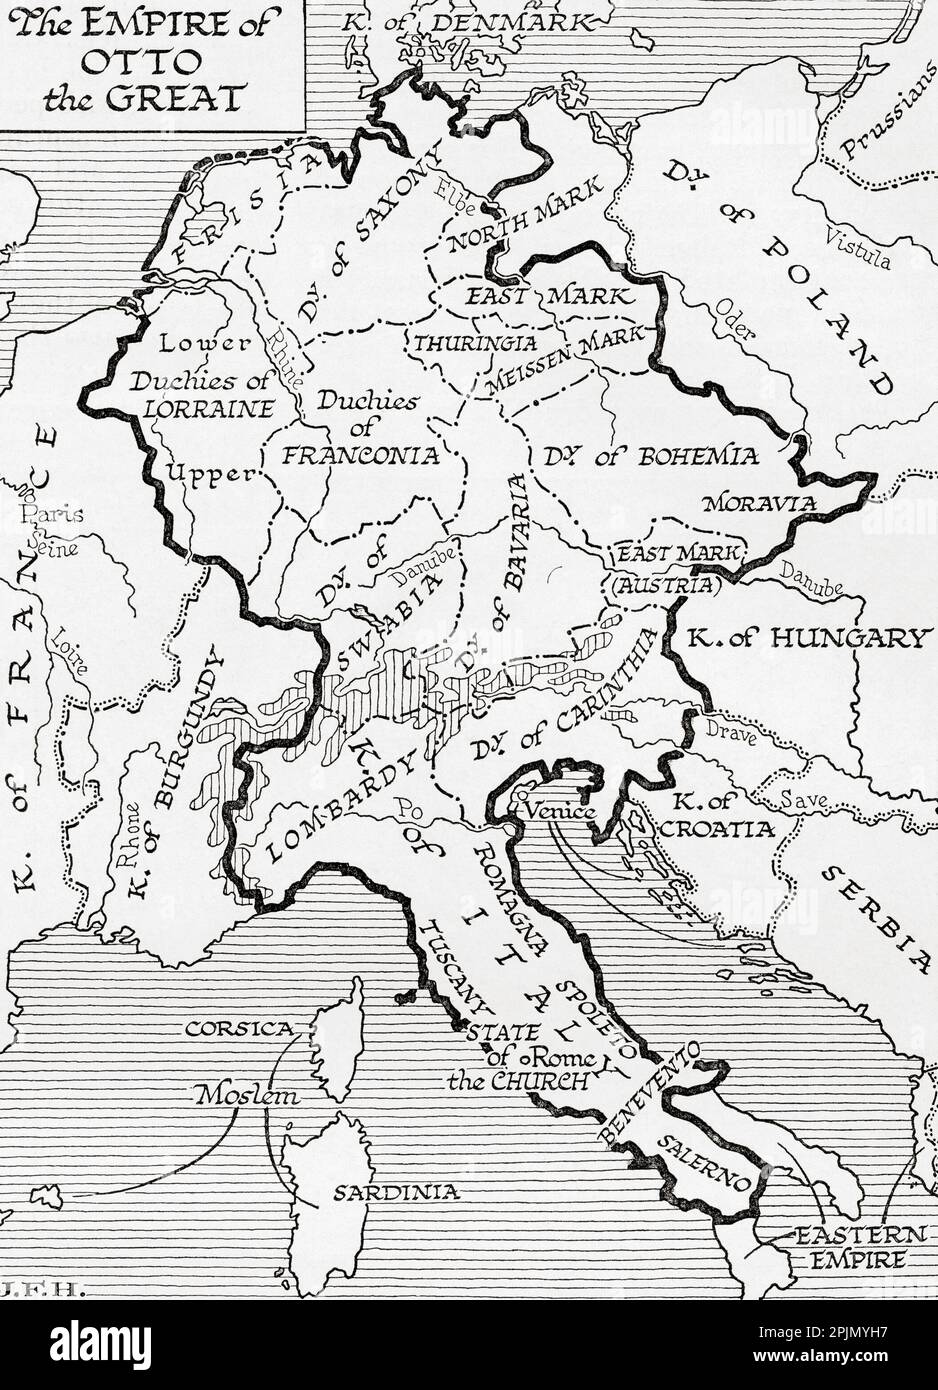 Karte des Reiches von Otto dem Großen, 10. Jahrhundert. Aus dem Buch Outline of History von H.G. Wells, veröffentlicht 1920. Stockfoto